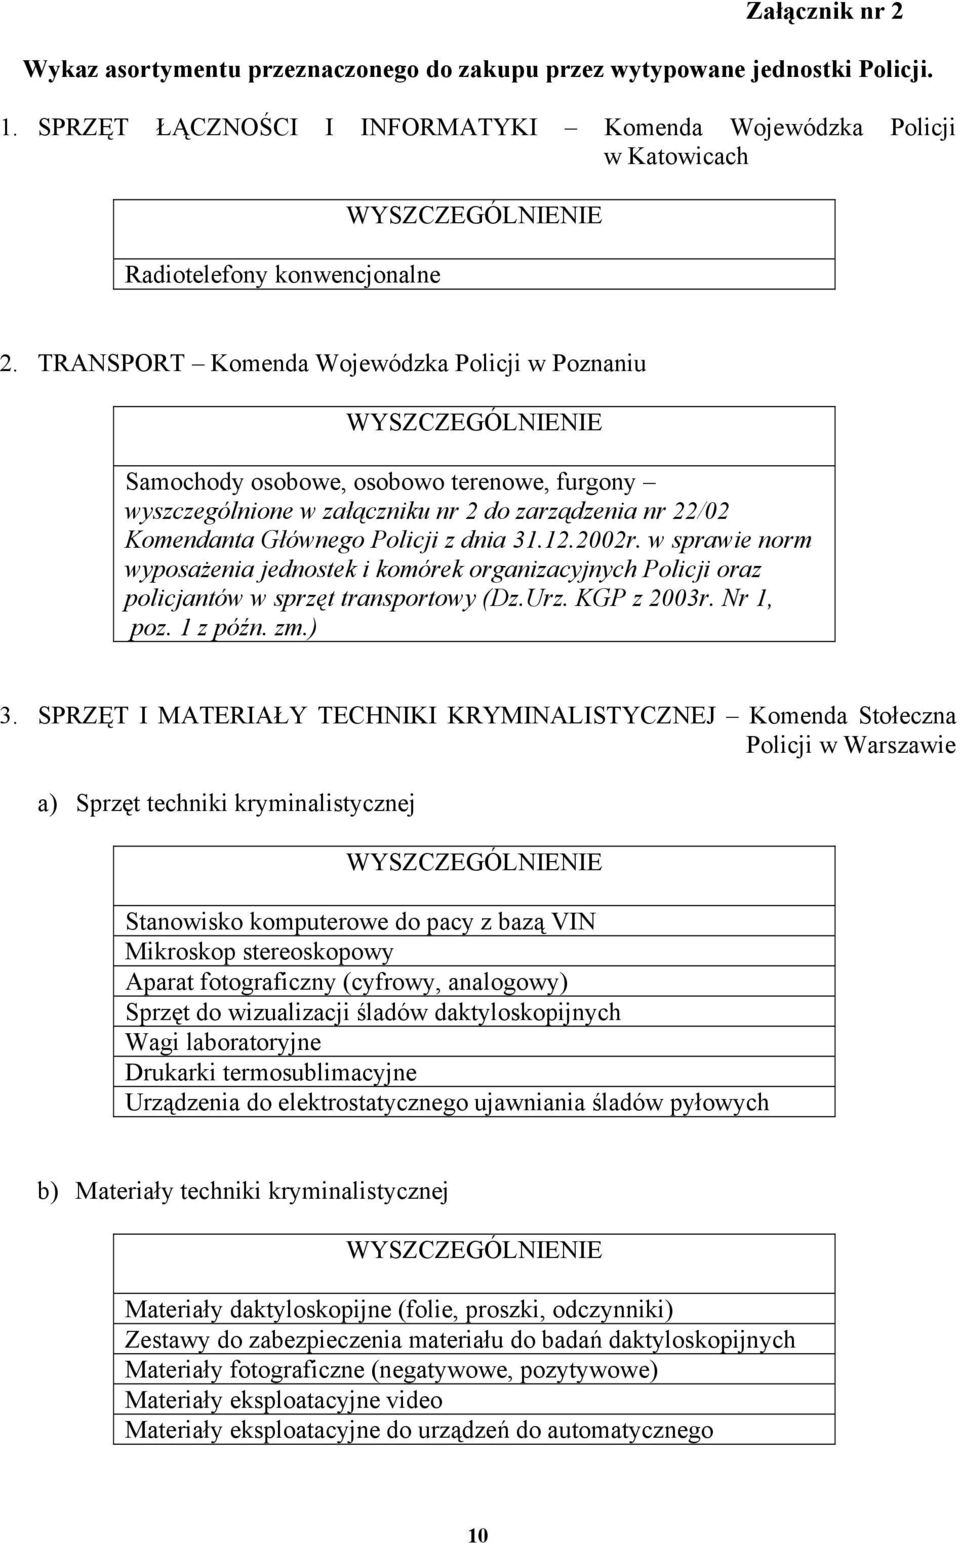 w sprawie norm wyposażenia jednostek i komórek organizacyjnych Policji oraz policjantów w sprzęt transportowy (Dz.Urz. KGP z 2003r. Nr 1, poz. 1 z późn. zm.) 3.